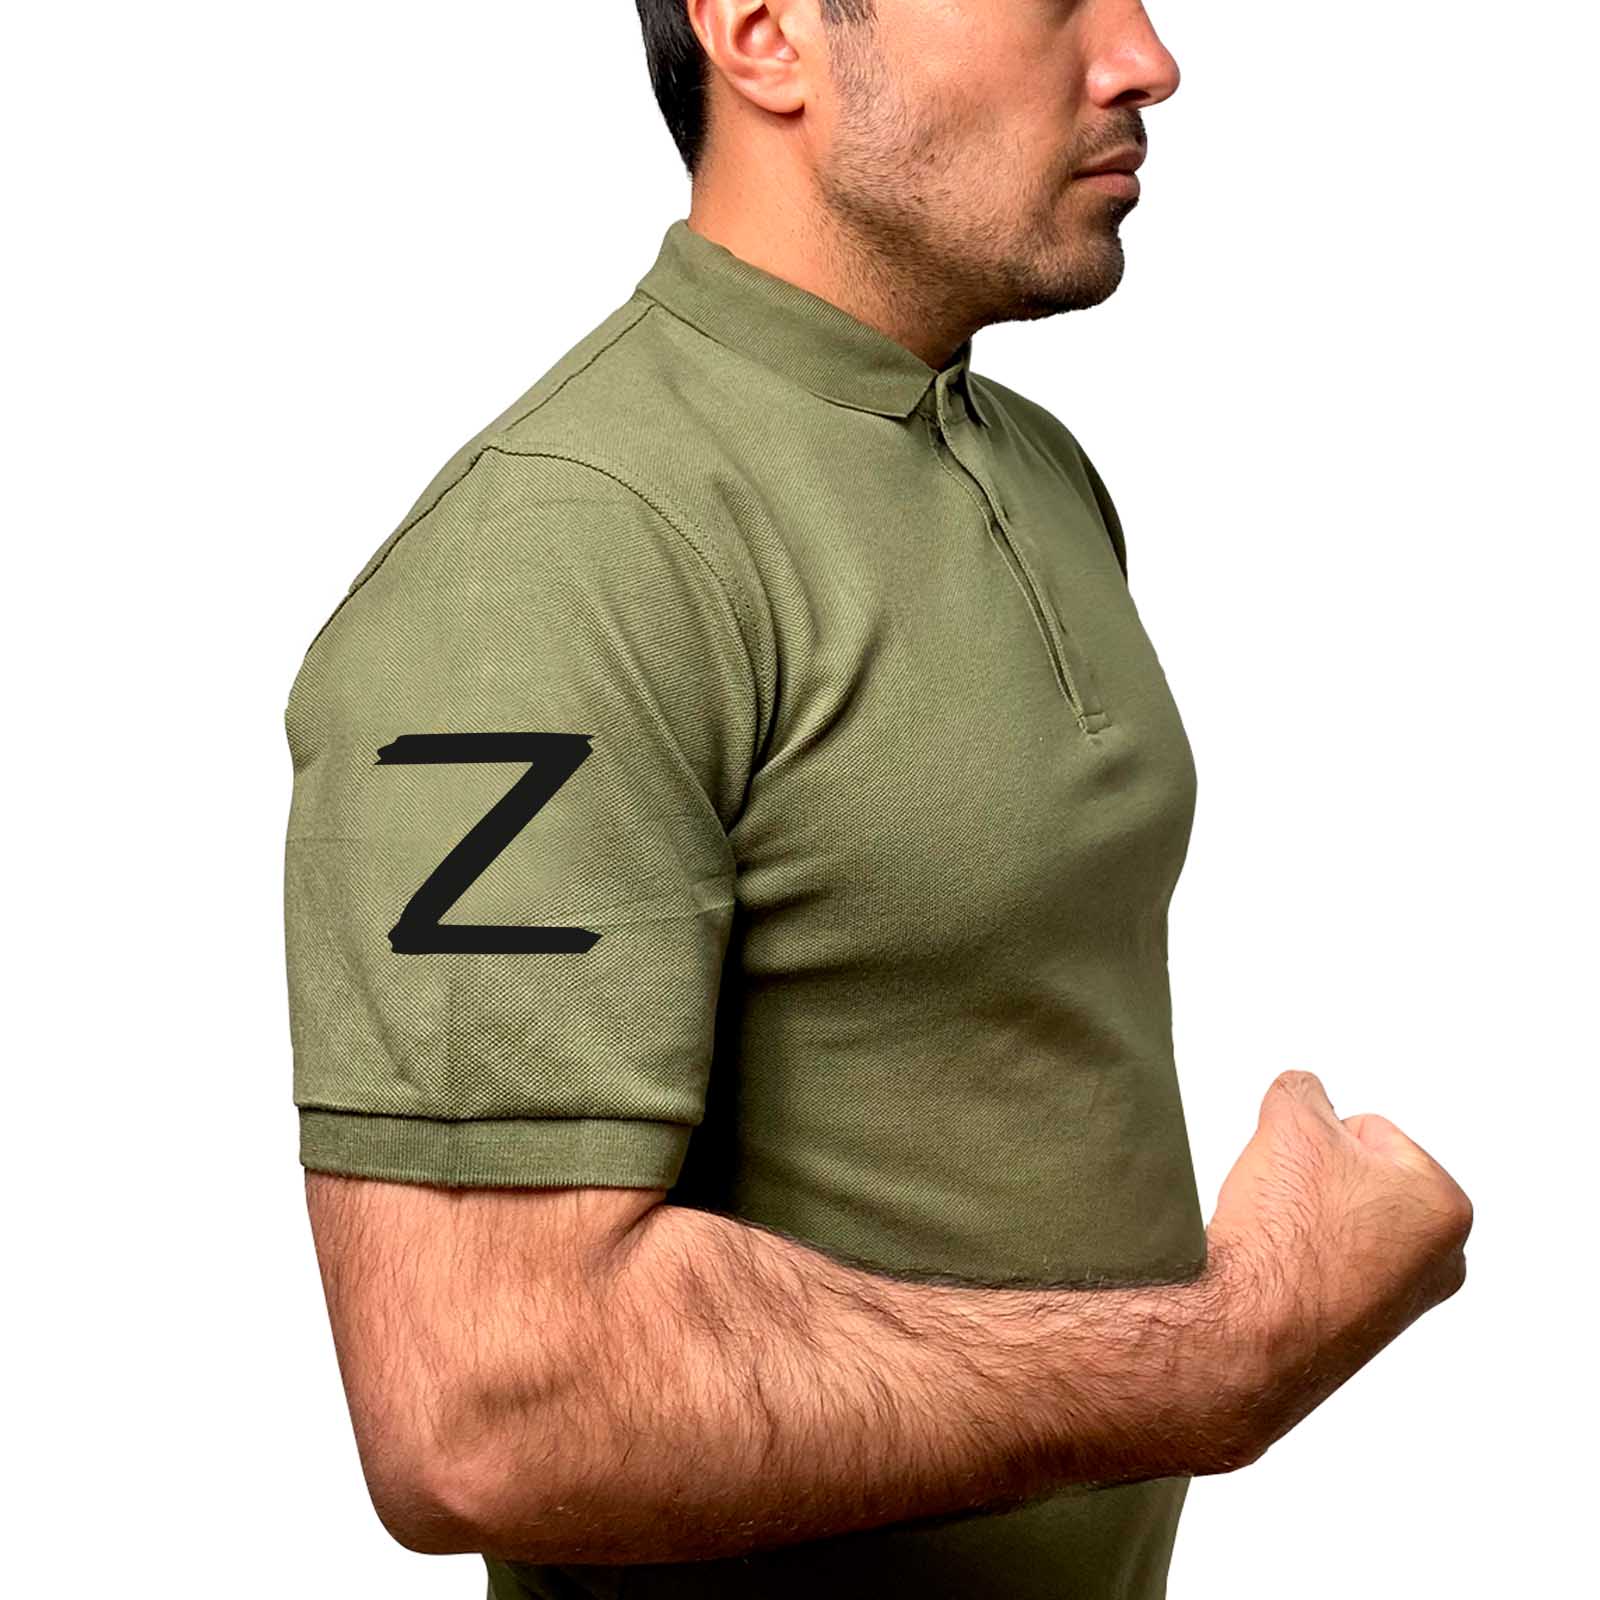 Купить трикотажную оливковую футболку-поло с литерой Z онлайн